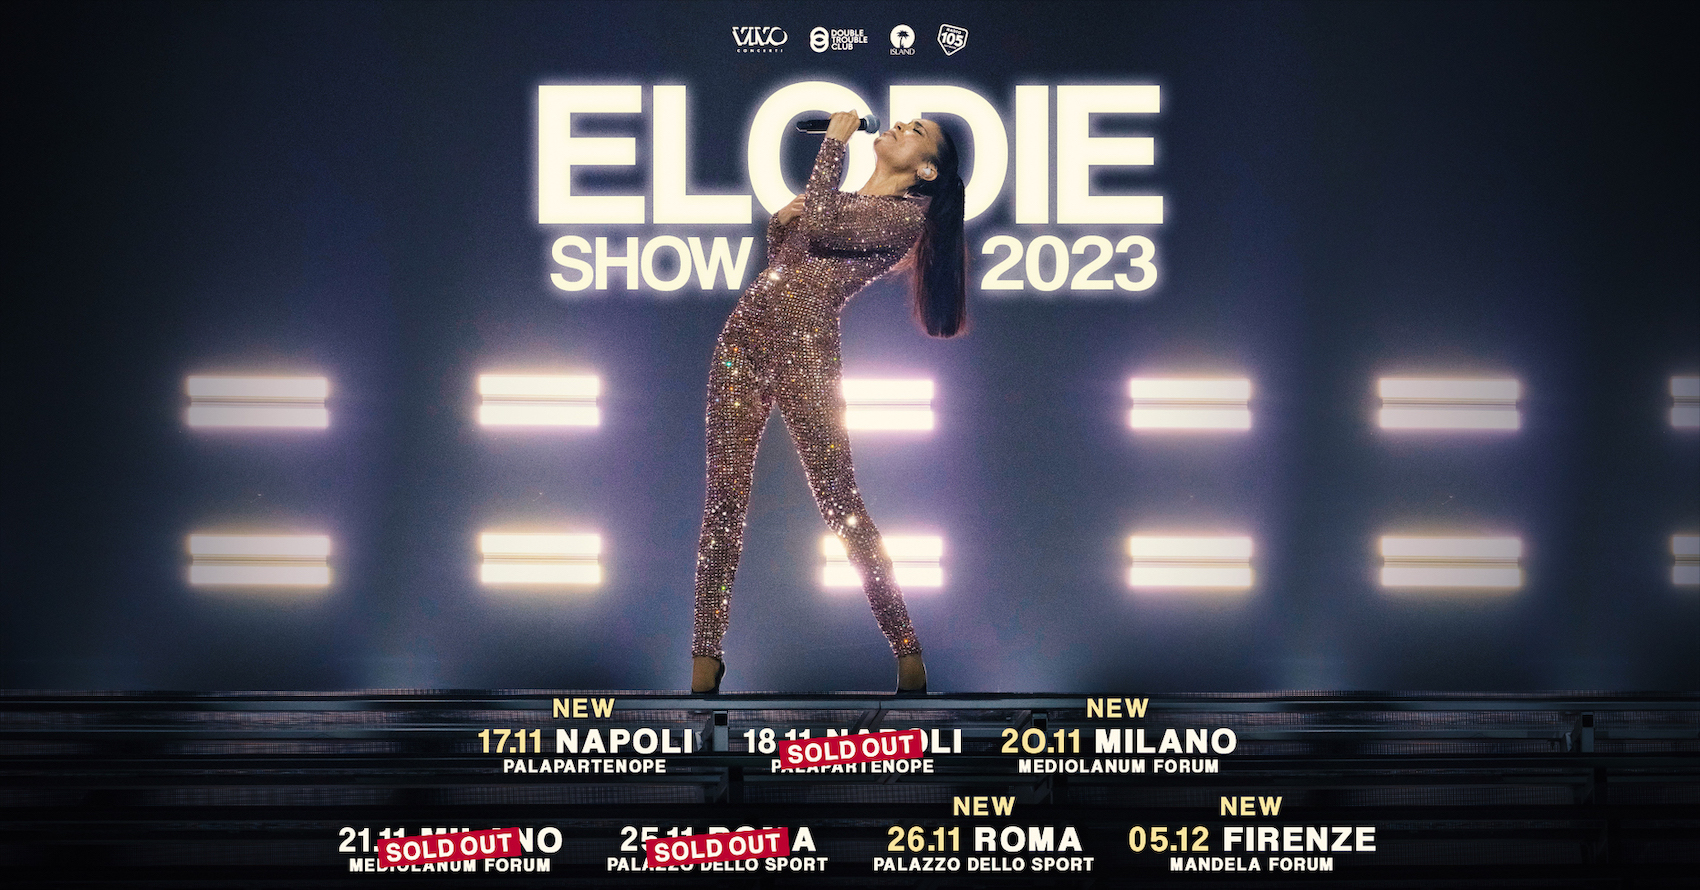 elodie show 2023